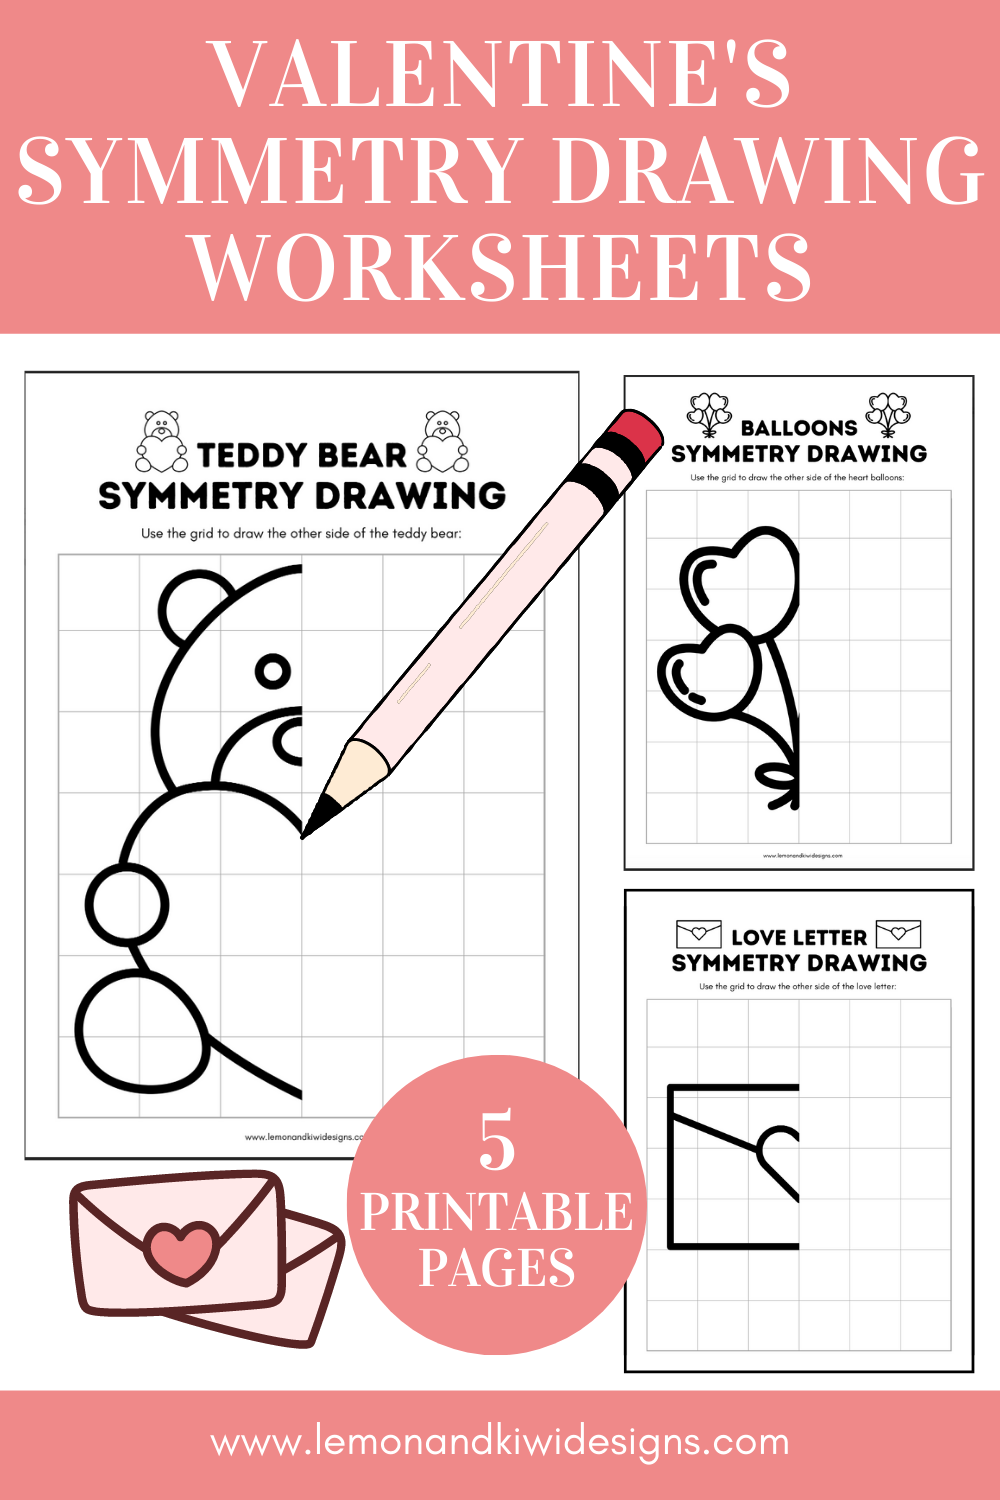 Printable Valentines Symmetry Drawing Worksheets